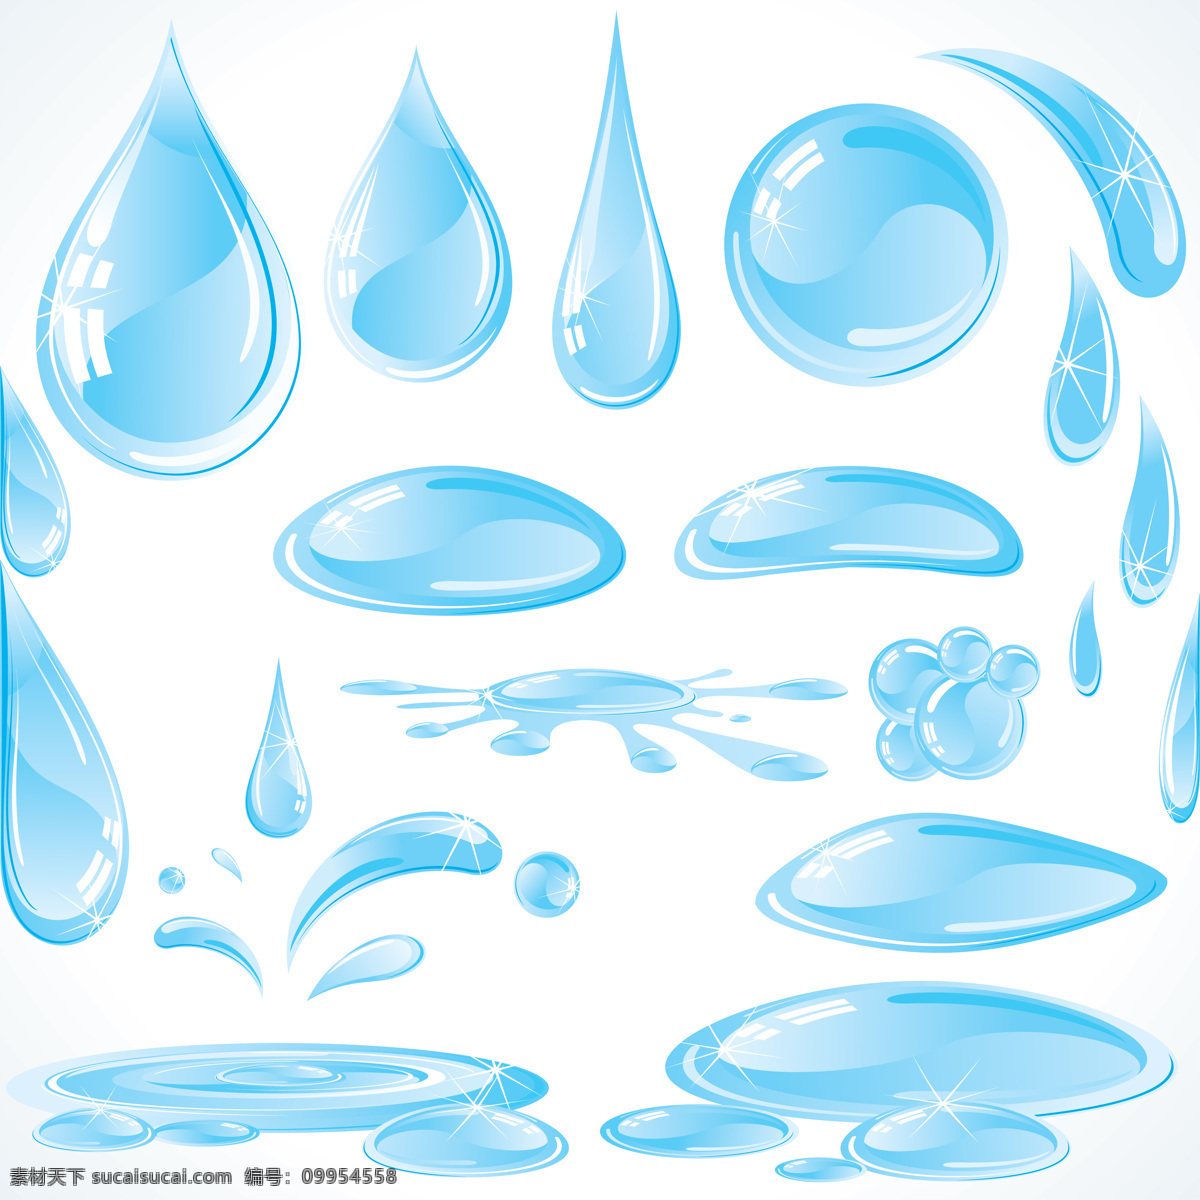 小水滴图片 水滴图片设计 水滴图片 水滴 水珠 蓝色水滴